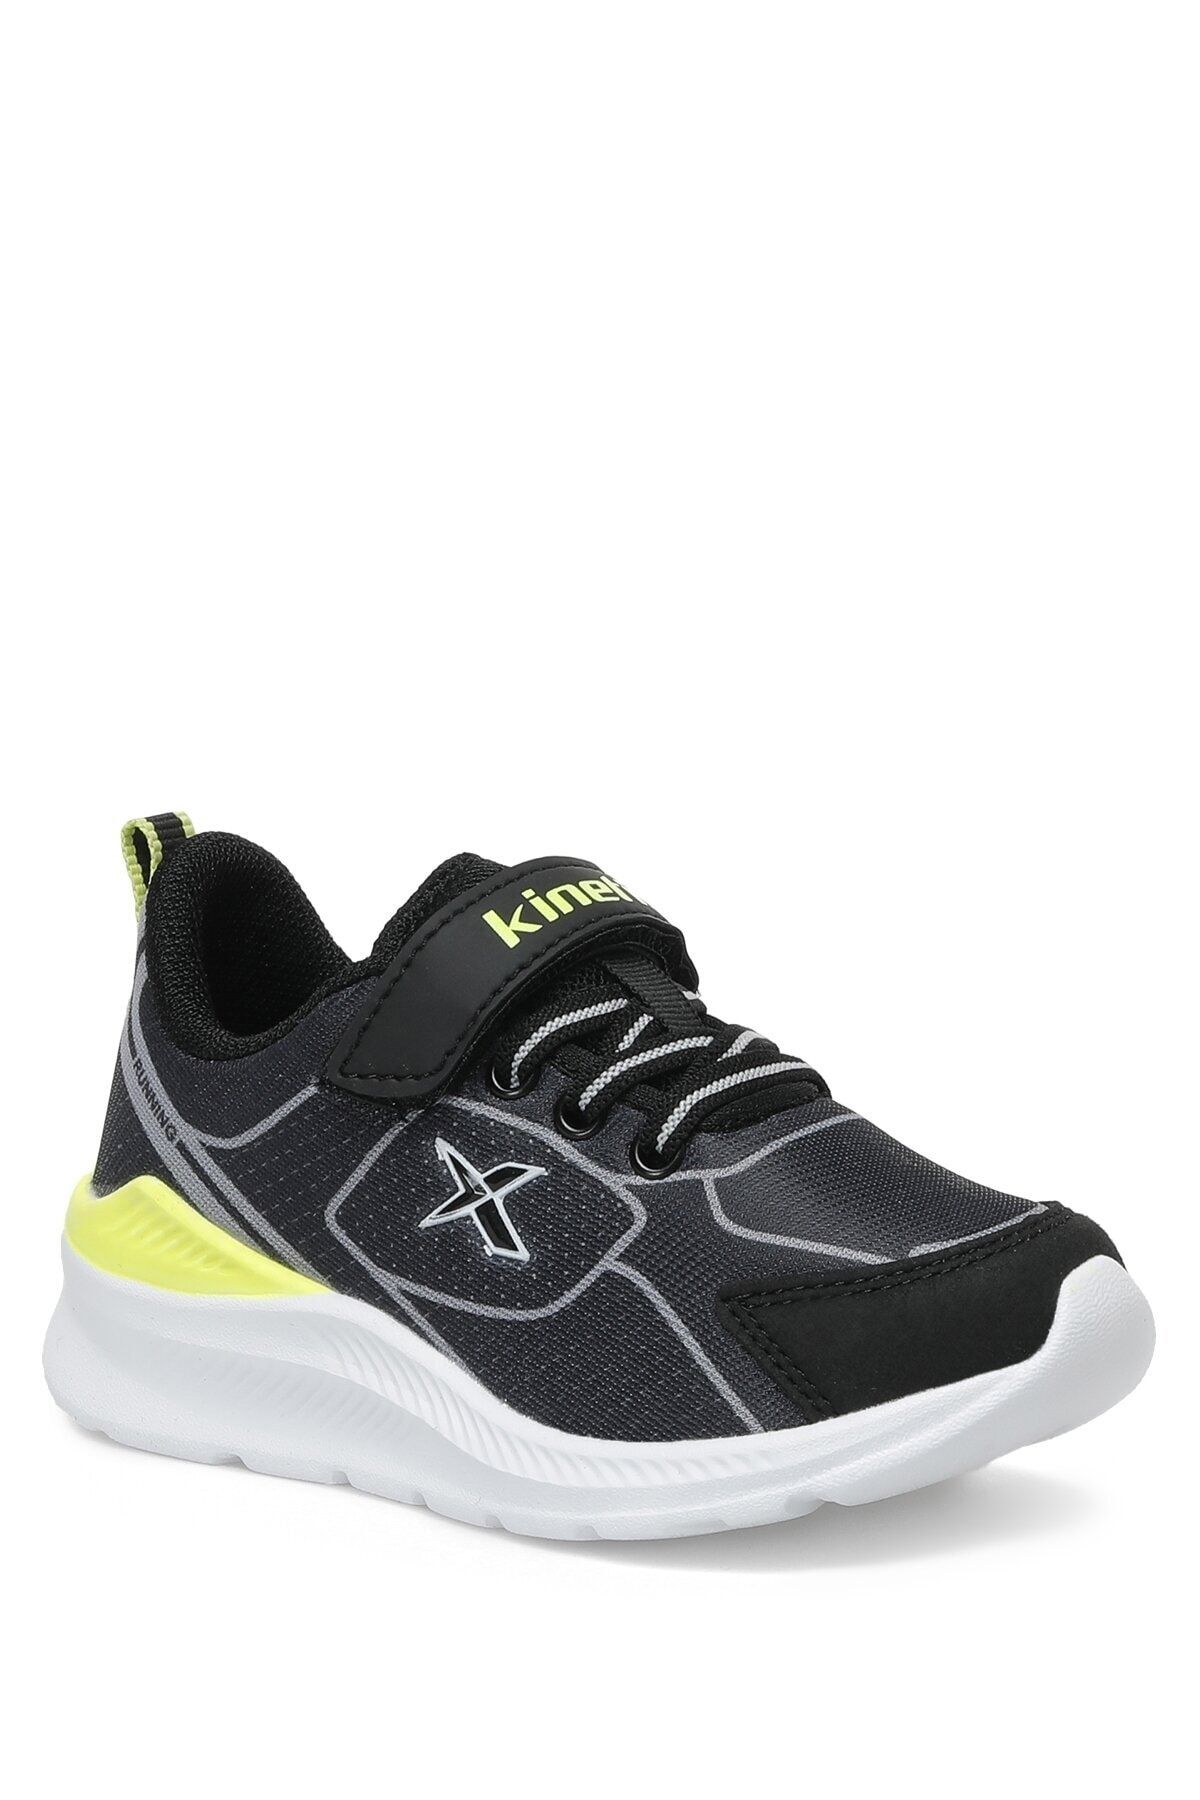 Kinetix Siyah - Polymer 2fx Erkek Çocuk Spor Ayakkabı